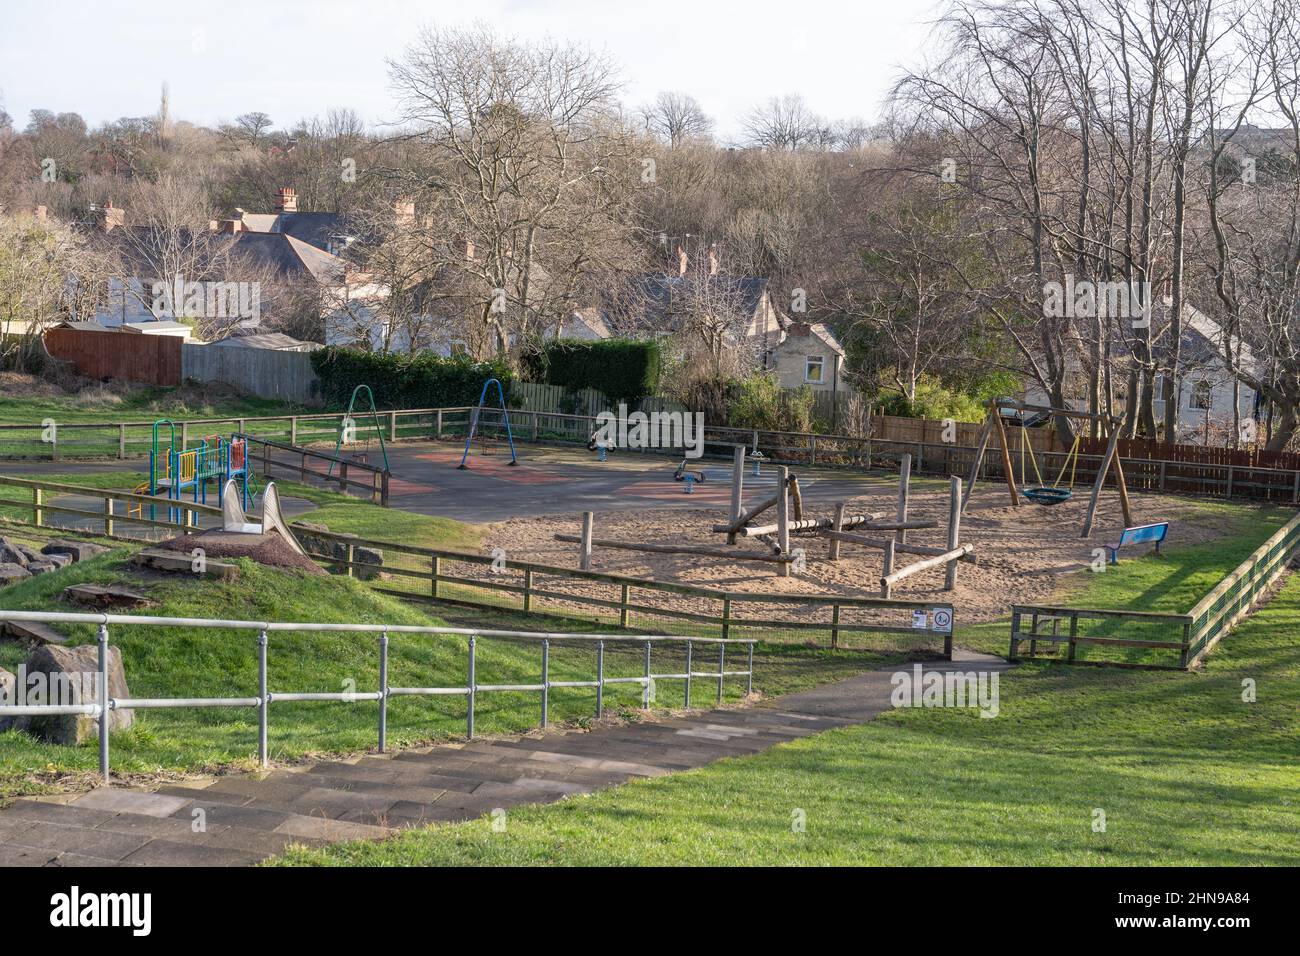 The Quarry Park in South Gosforth, Newcastle Upon Tyne, Großbritannien. Ein Kinderspielplatz mit Sandfläche in einem öffentlichen Park. Stockfoto